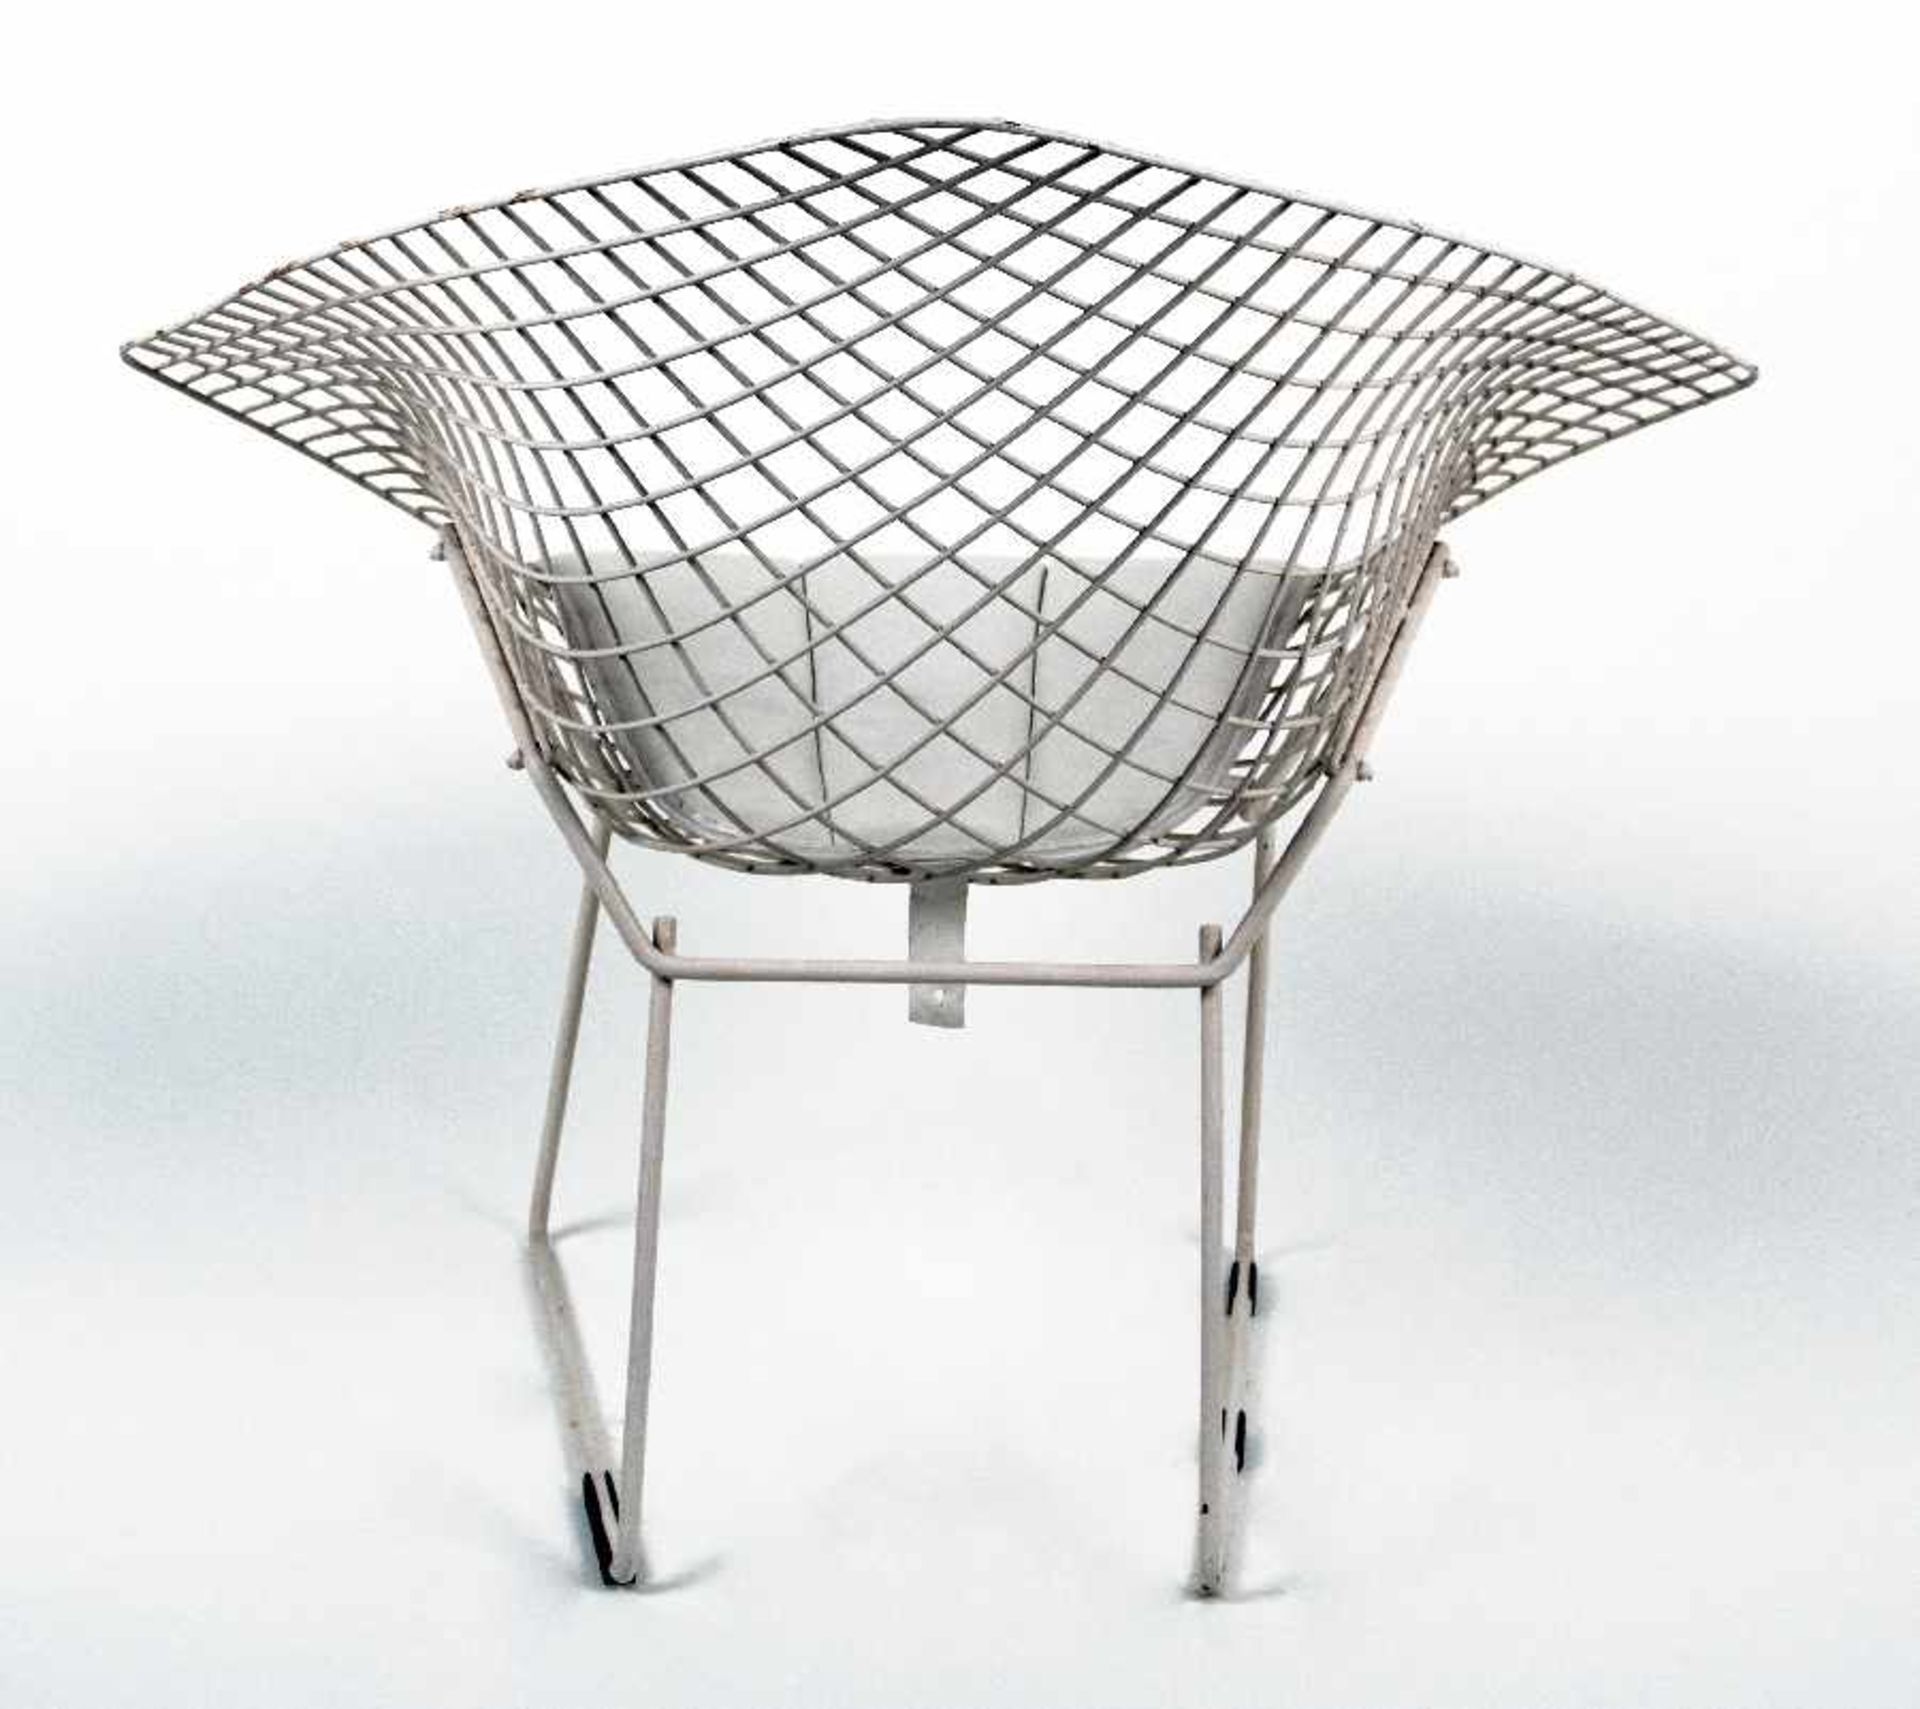 Harry Bertoia1915 San Lorenzo/Italien - 1978 PennsylvaniaDiamond ChairStahl, weiss lackiert, - Image 2 of 2